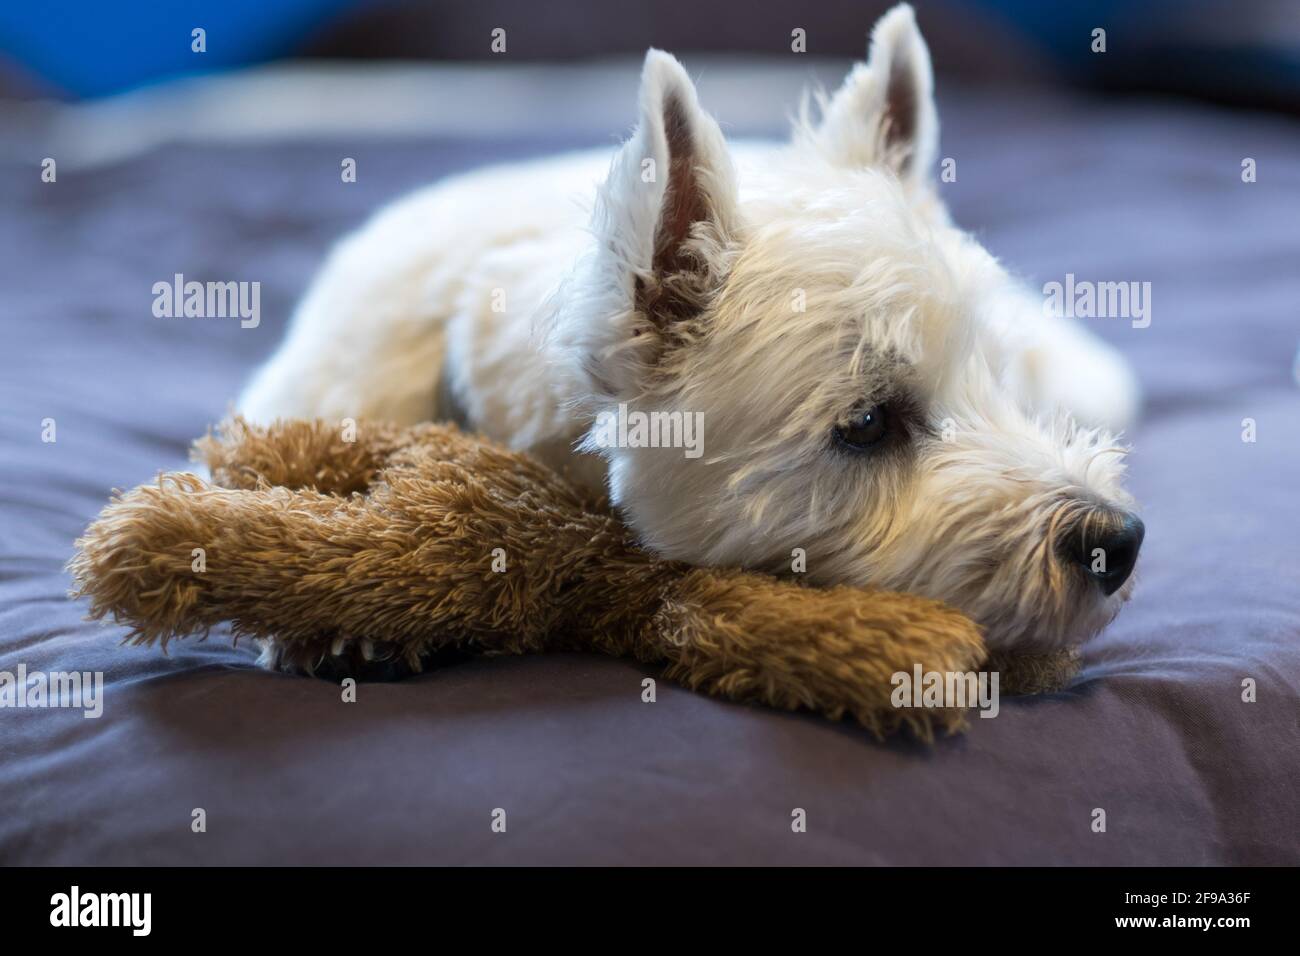 Triste West Highland bianco terrier cane coccolare teddy orso giocattolo guardando lateralmente - profondità di campo poco profonda Foto Stock